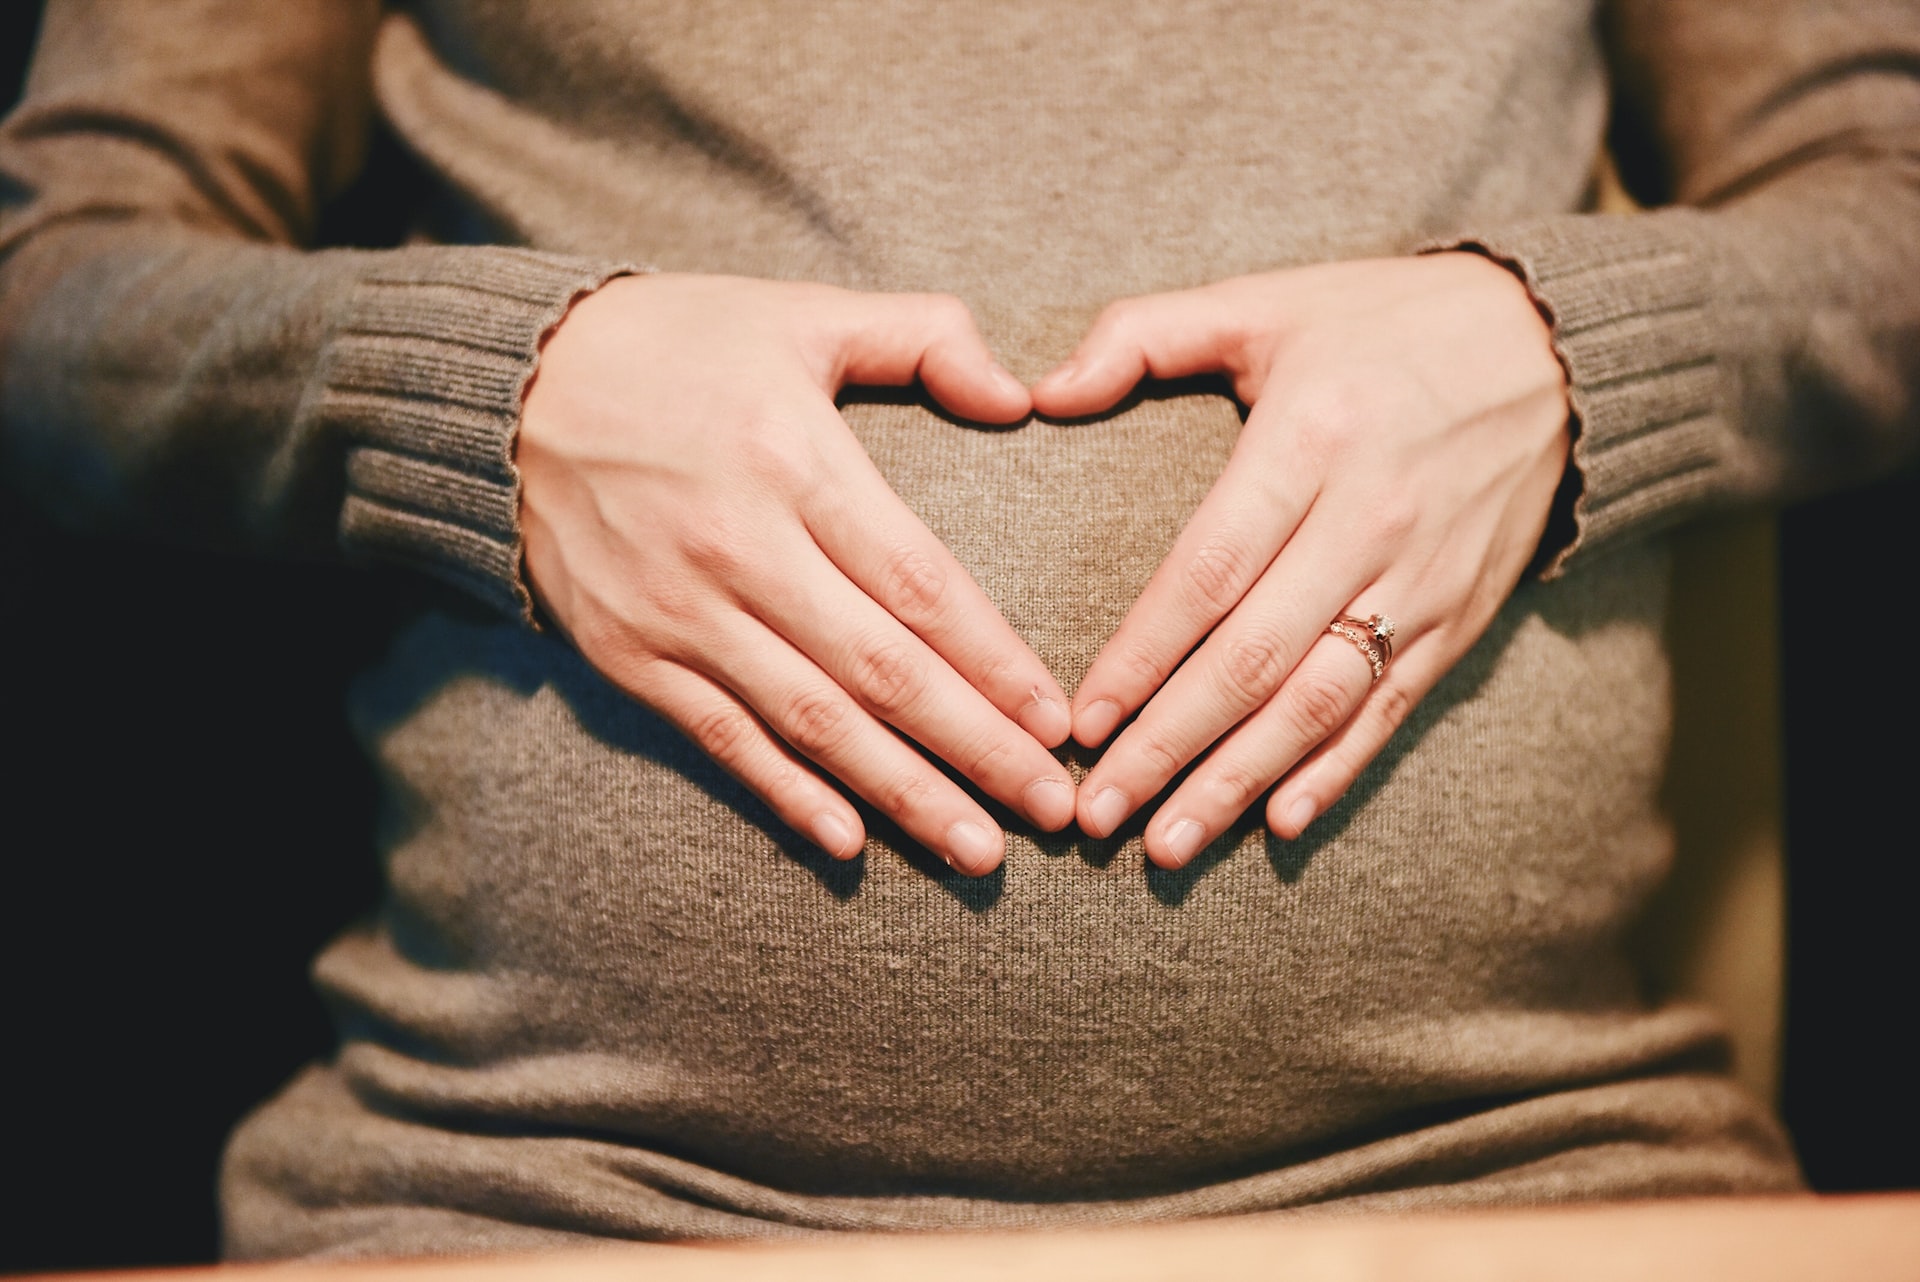 Ból pleców w ciąży – skąd pochodzi i jak go zwalczyć?